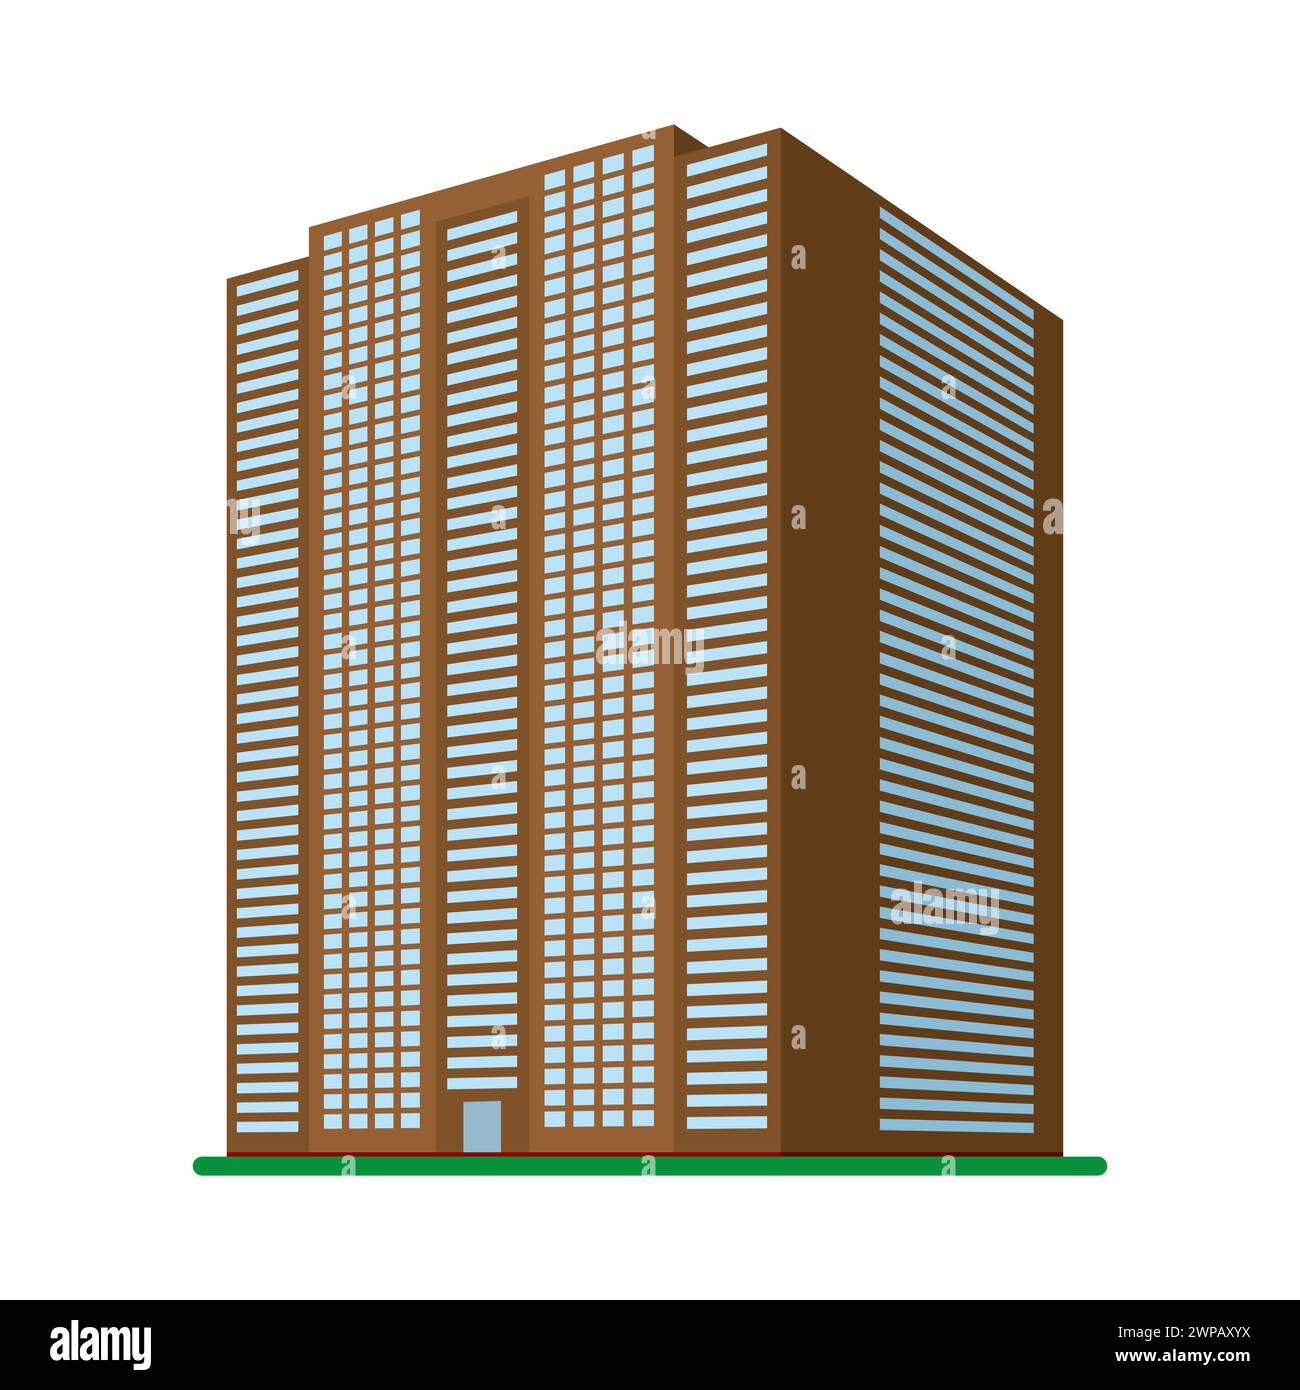 Un immeuble moderne de grande hauteur sur un fond blanc. Vue du bâtiment depuis le bas. Illustration vectorielle isométrique. Illustration de Vecteur